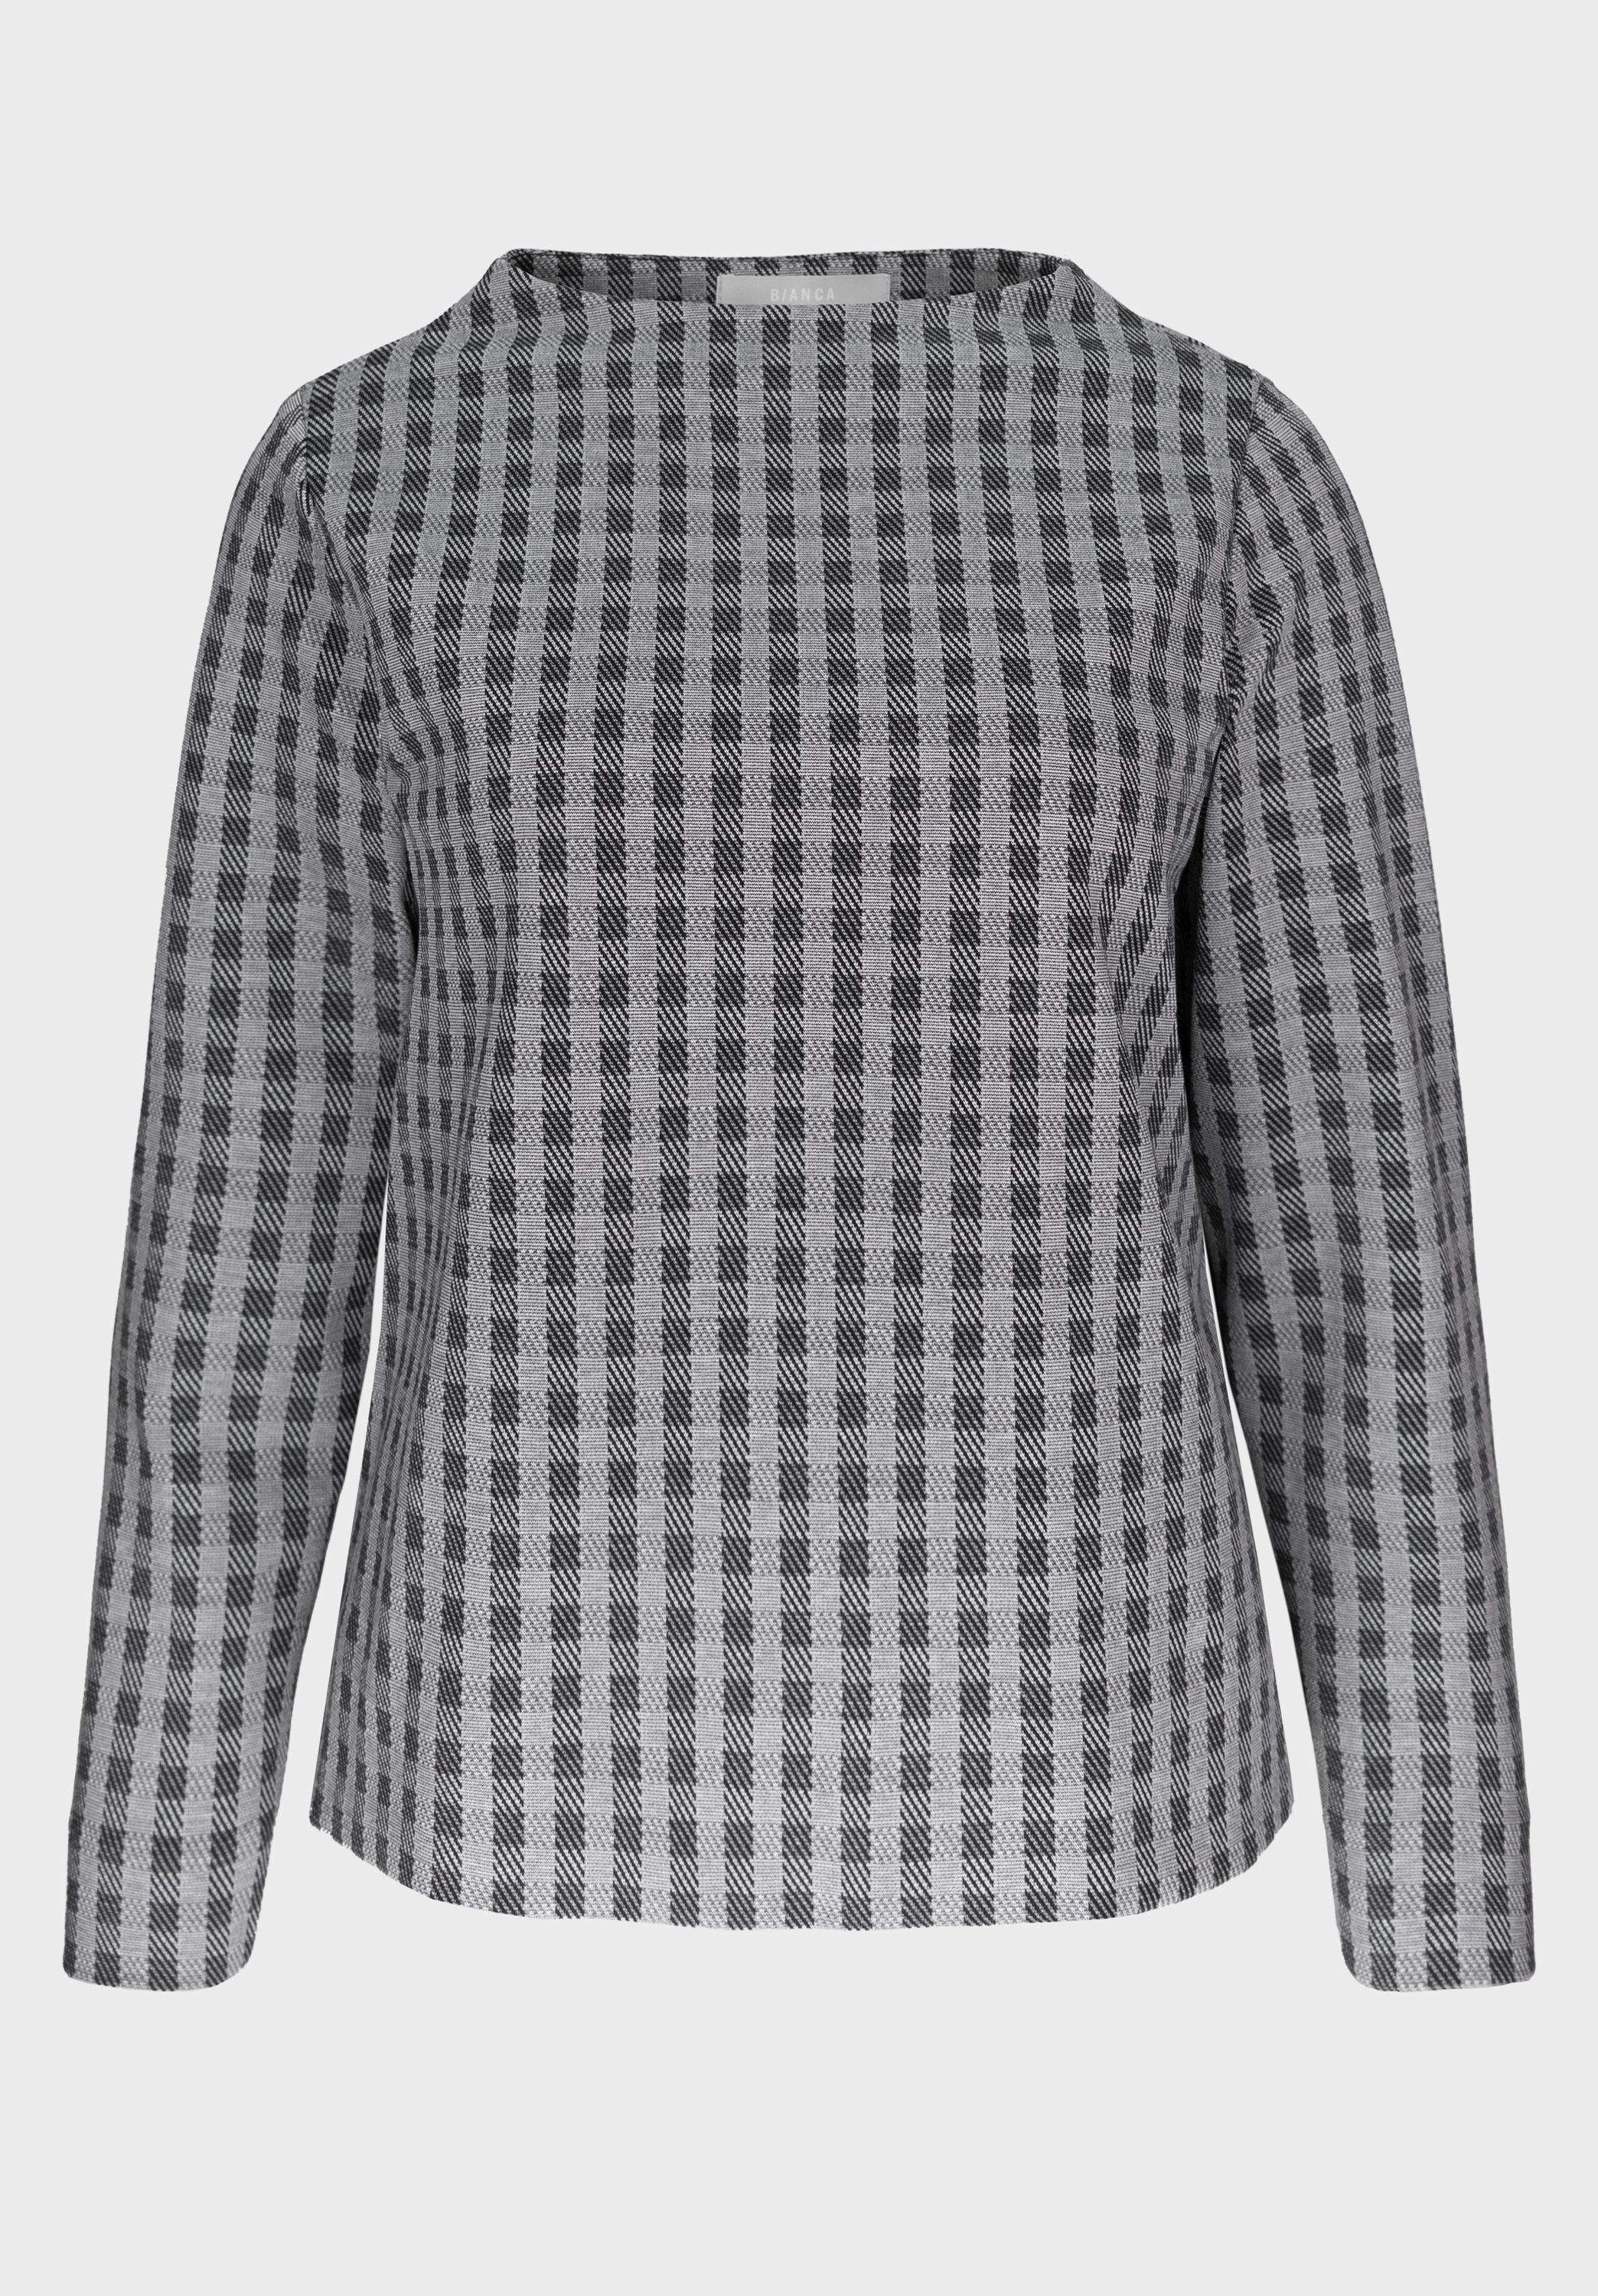 modernem Langarmshirt aus Sweat-Stoff bianca Design mit KYLIN